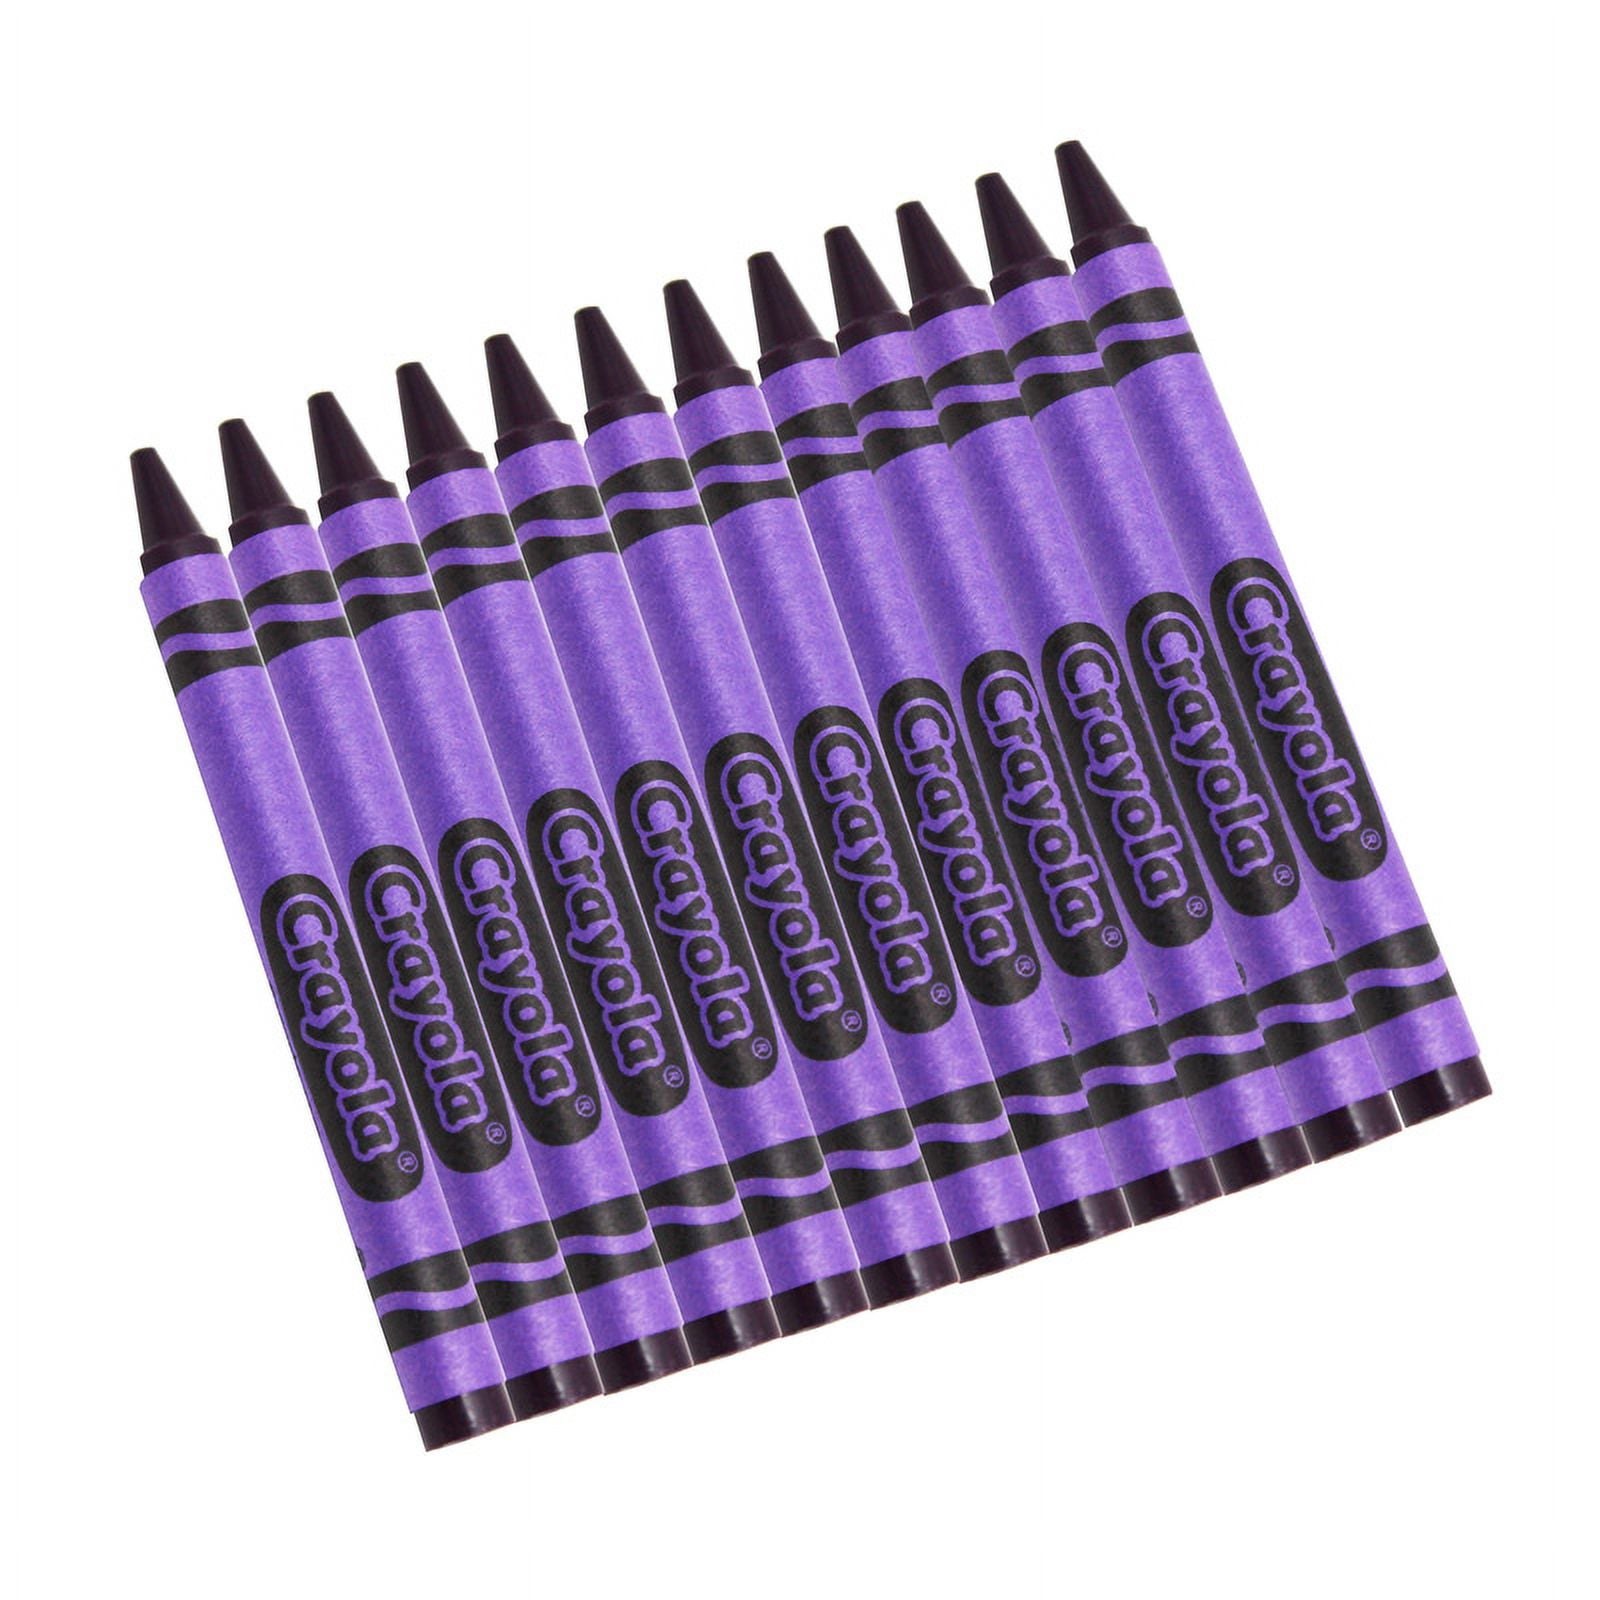 (20) Crayola Colored Pencils (violet *purple*) BULK